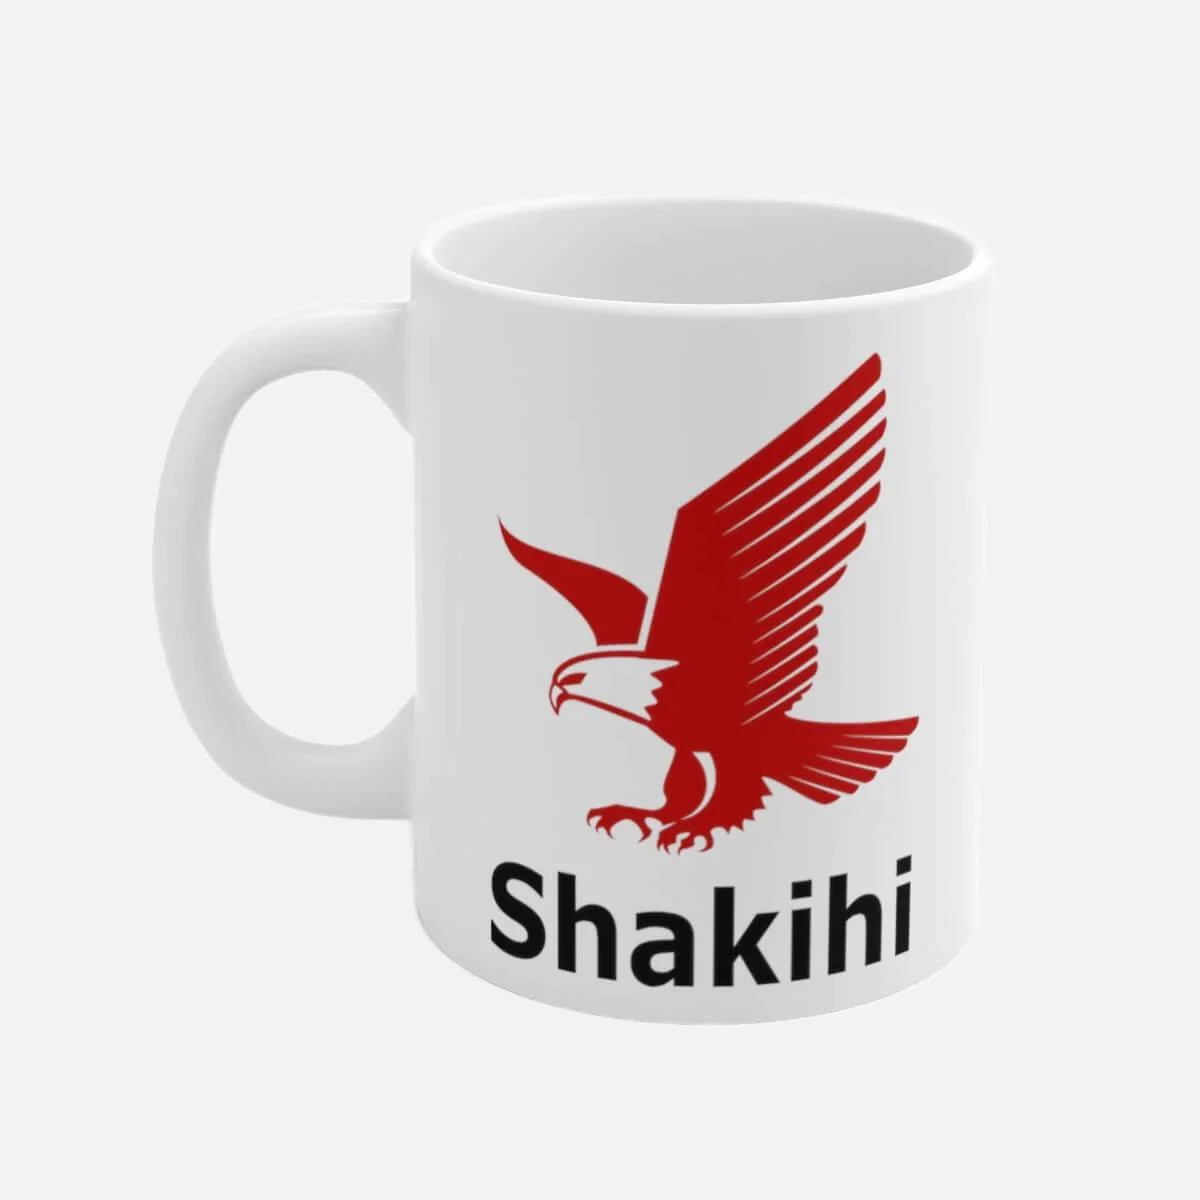 Shahkihi (Love) Eagle Mug